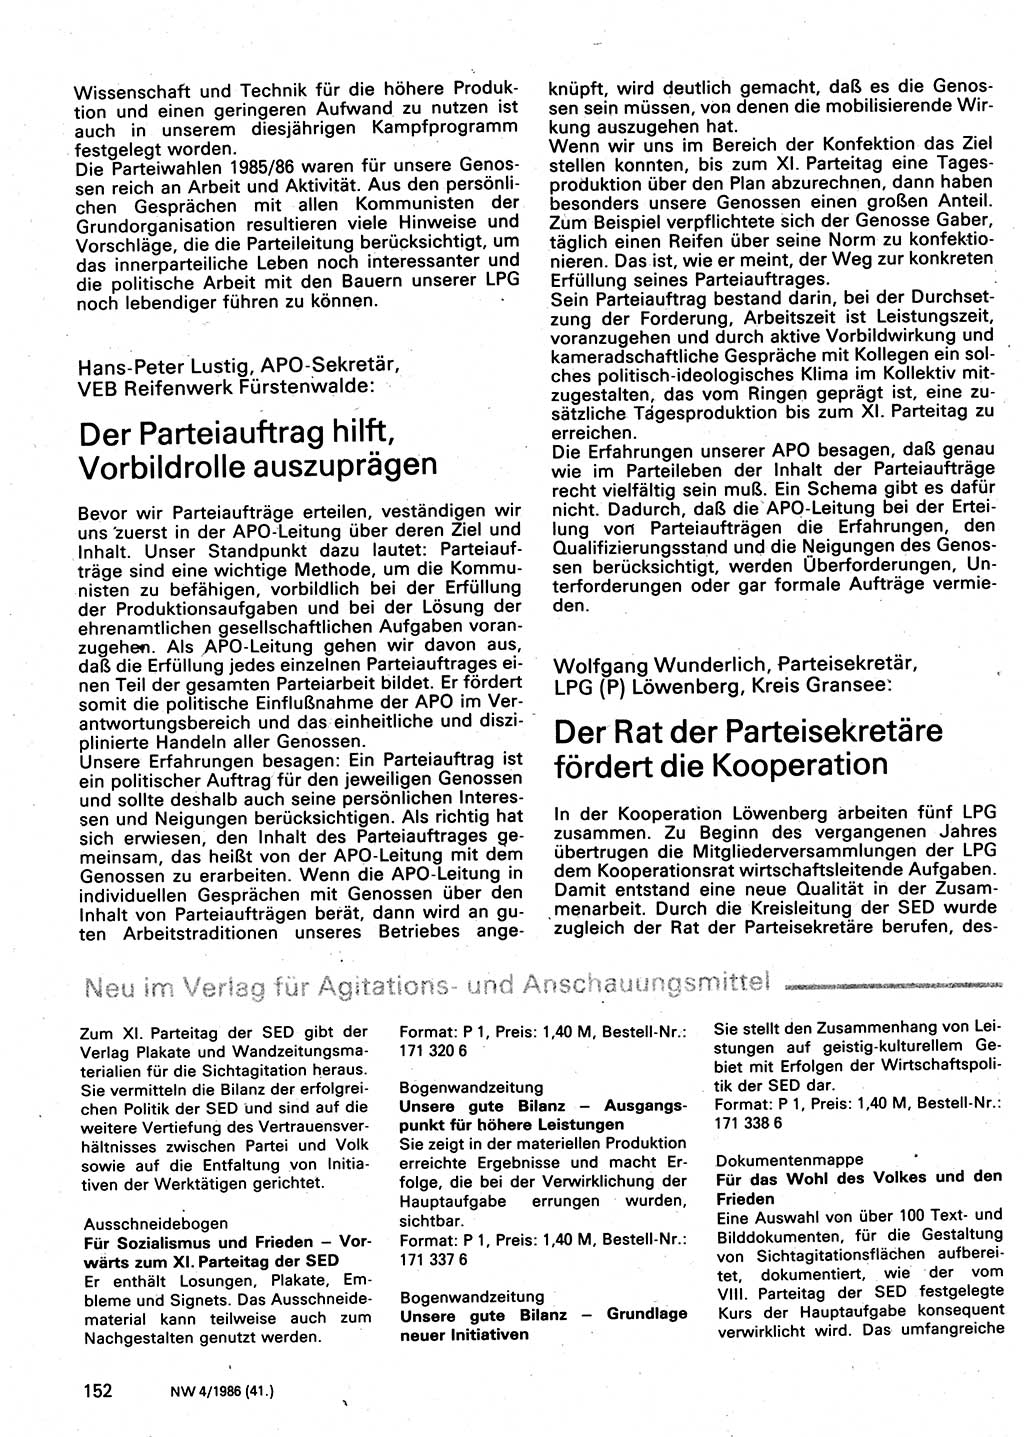 Neuer Weg (NW), Organ des Zentralkomitees (ZK) der SED (Sozialistische Einheitspartei Deutschlands) für Fragen des Parteilebens, 41. Jahrgang [Deutsche Demokratische Republik (DDR)] 1986, Seite 152 (NW ZK SED DDR 1986, S. 152)